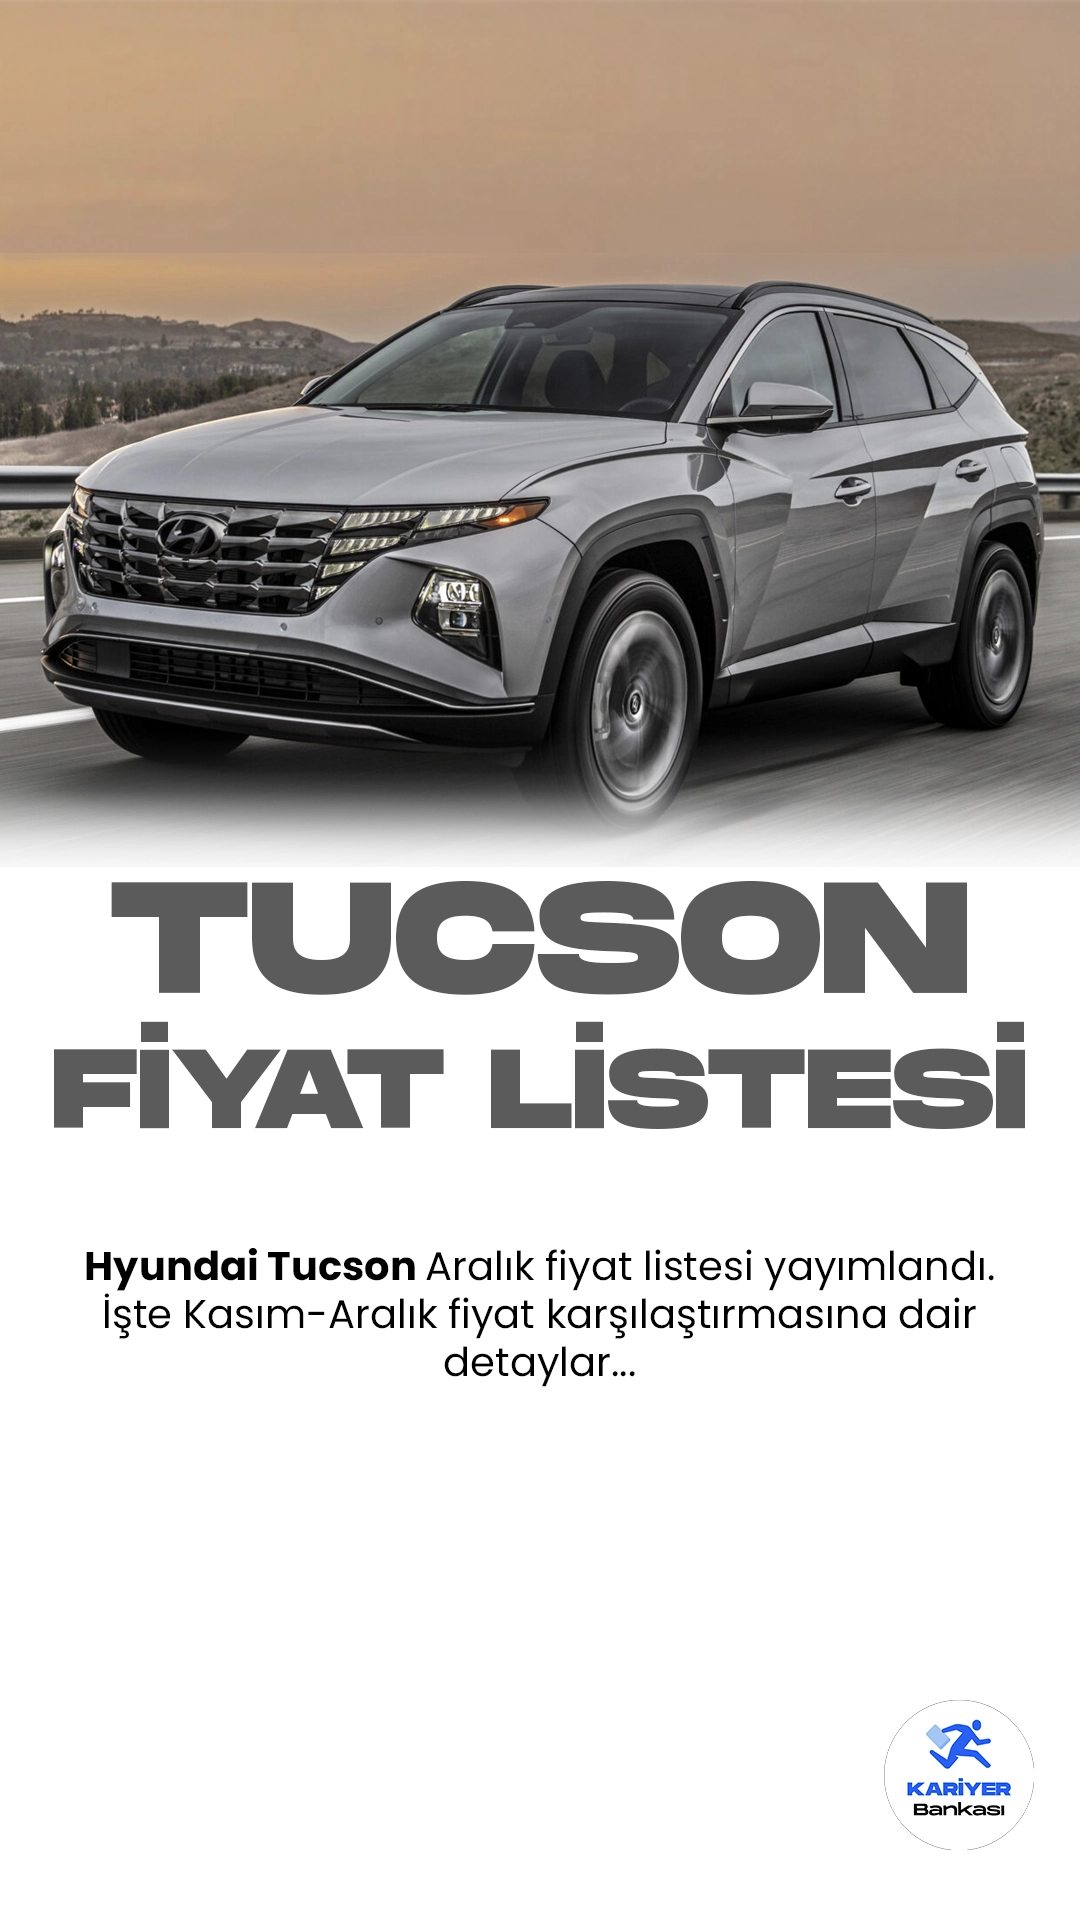 Hyundai Tucson Aralık 2023 Fiyat Listesi Yayımlandı.Hyundai, güçlü performansı ve şık tasarımıyla öne çıkan Tucson modelini yenileyerek otomobil tutkunlarını kendine çekmeye devam ediyor. Yenilenen Tucson, dinamik çizgileri ve modern detaylarıyla dikkat çekiyor. Yüksek teknoloji özellikleriyle donatılan araç, sürücü asistan sistemleri ve güvenlik donanımlarıyla öne çıkıyor.